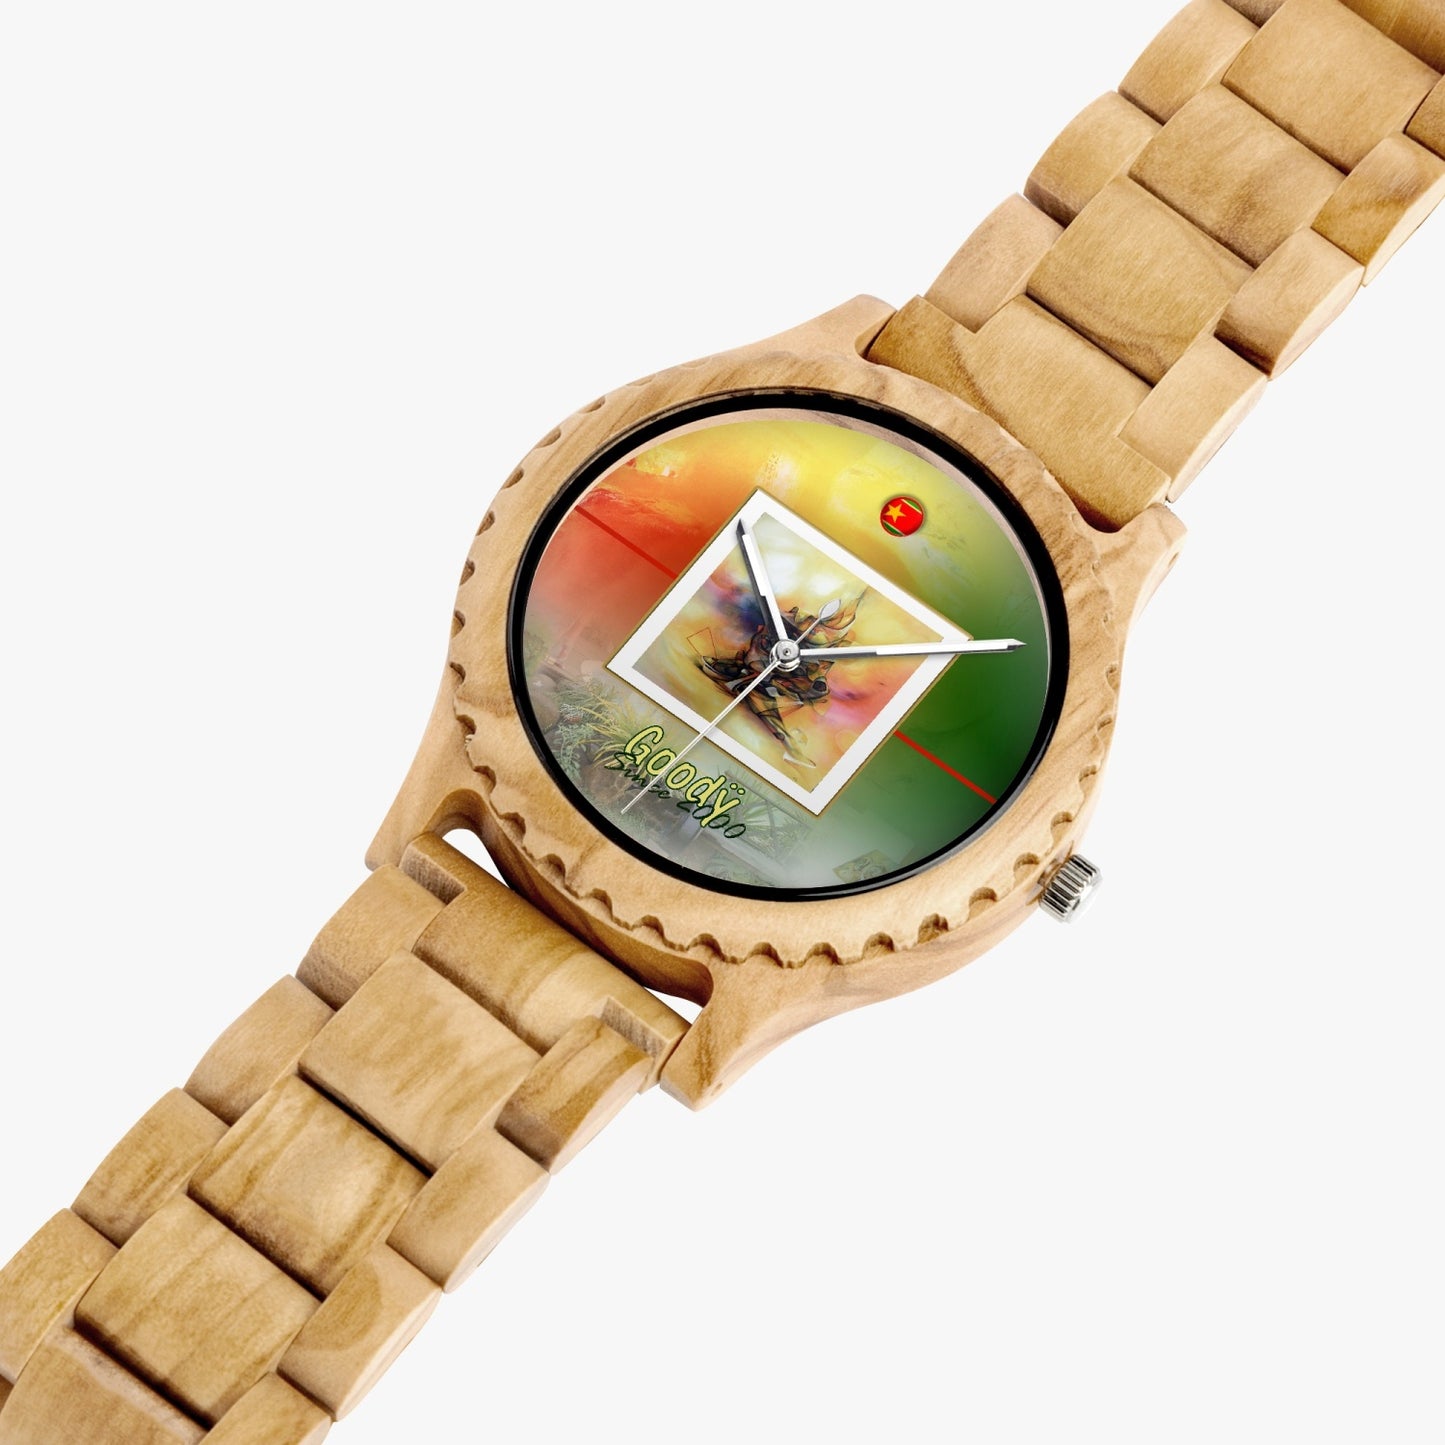 Natural wood watch "Goodÿ"